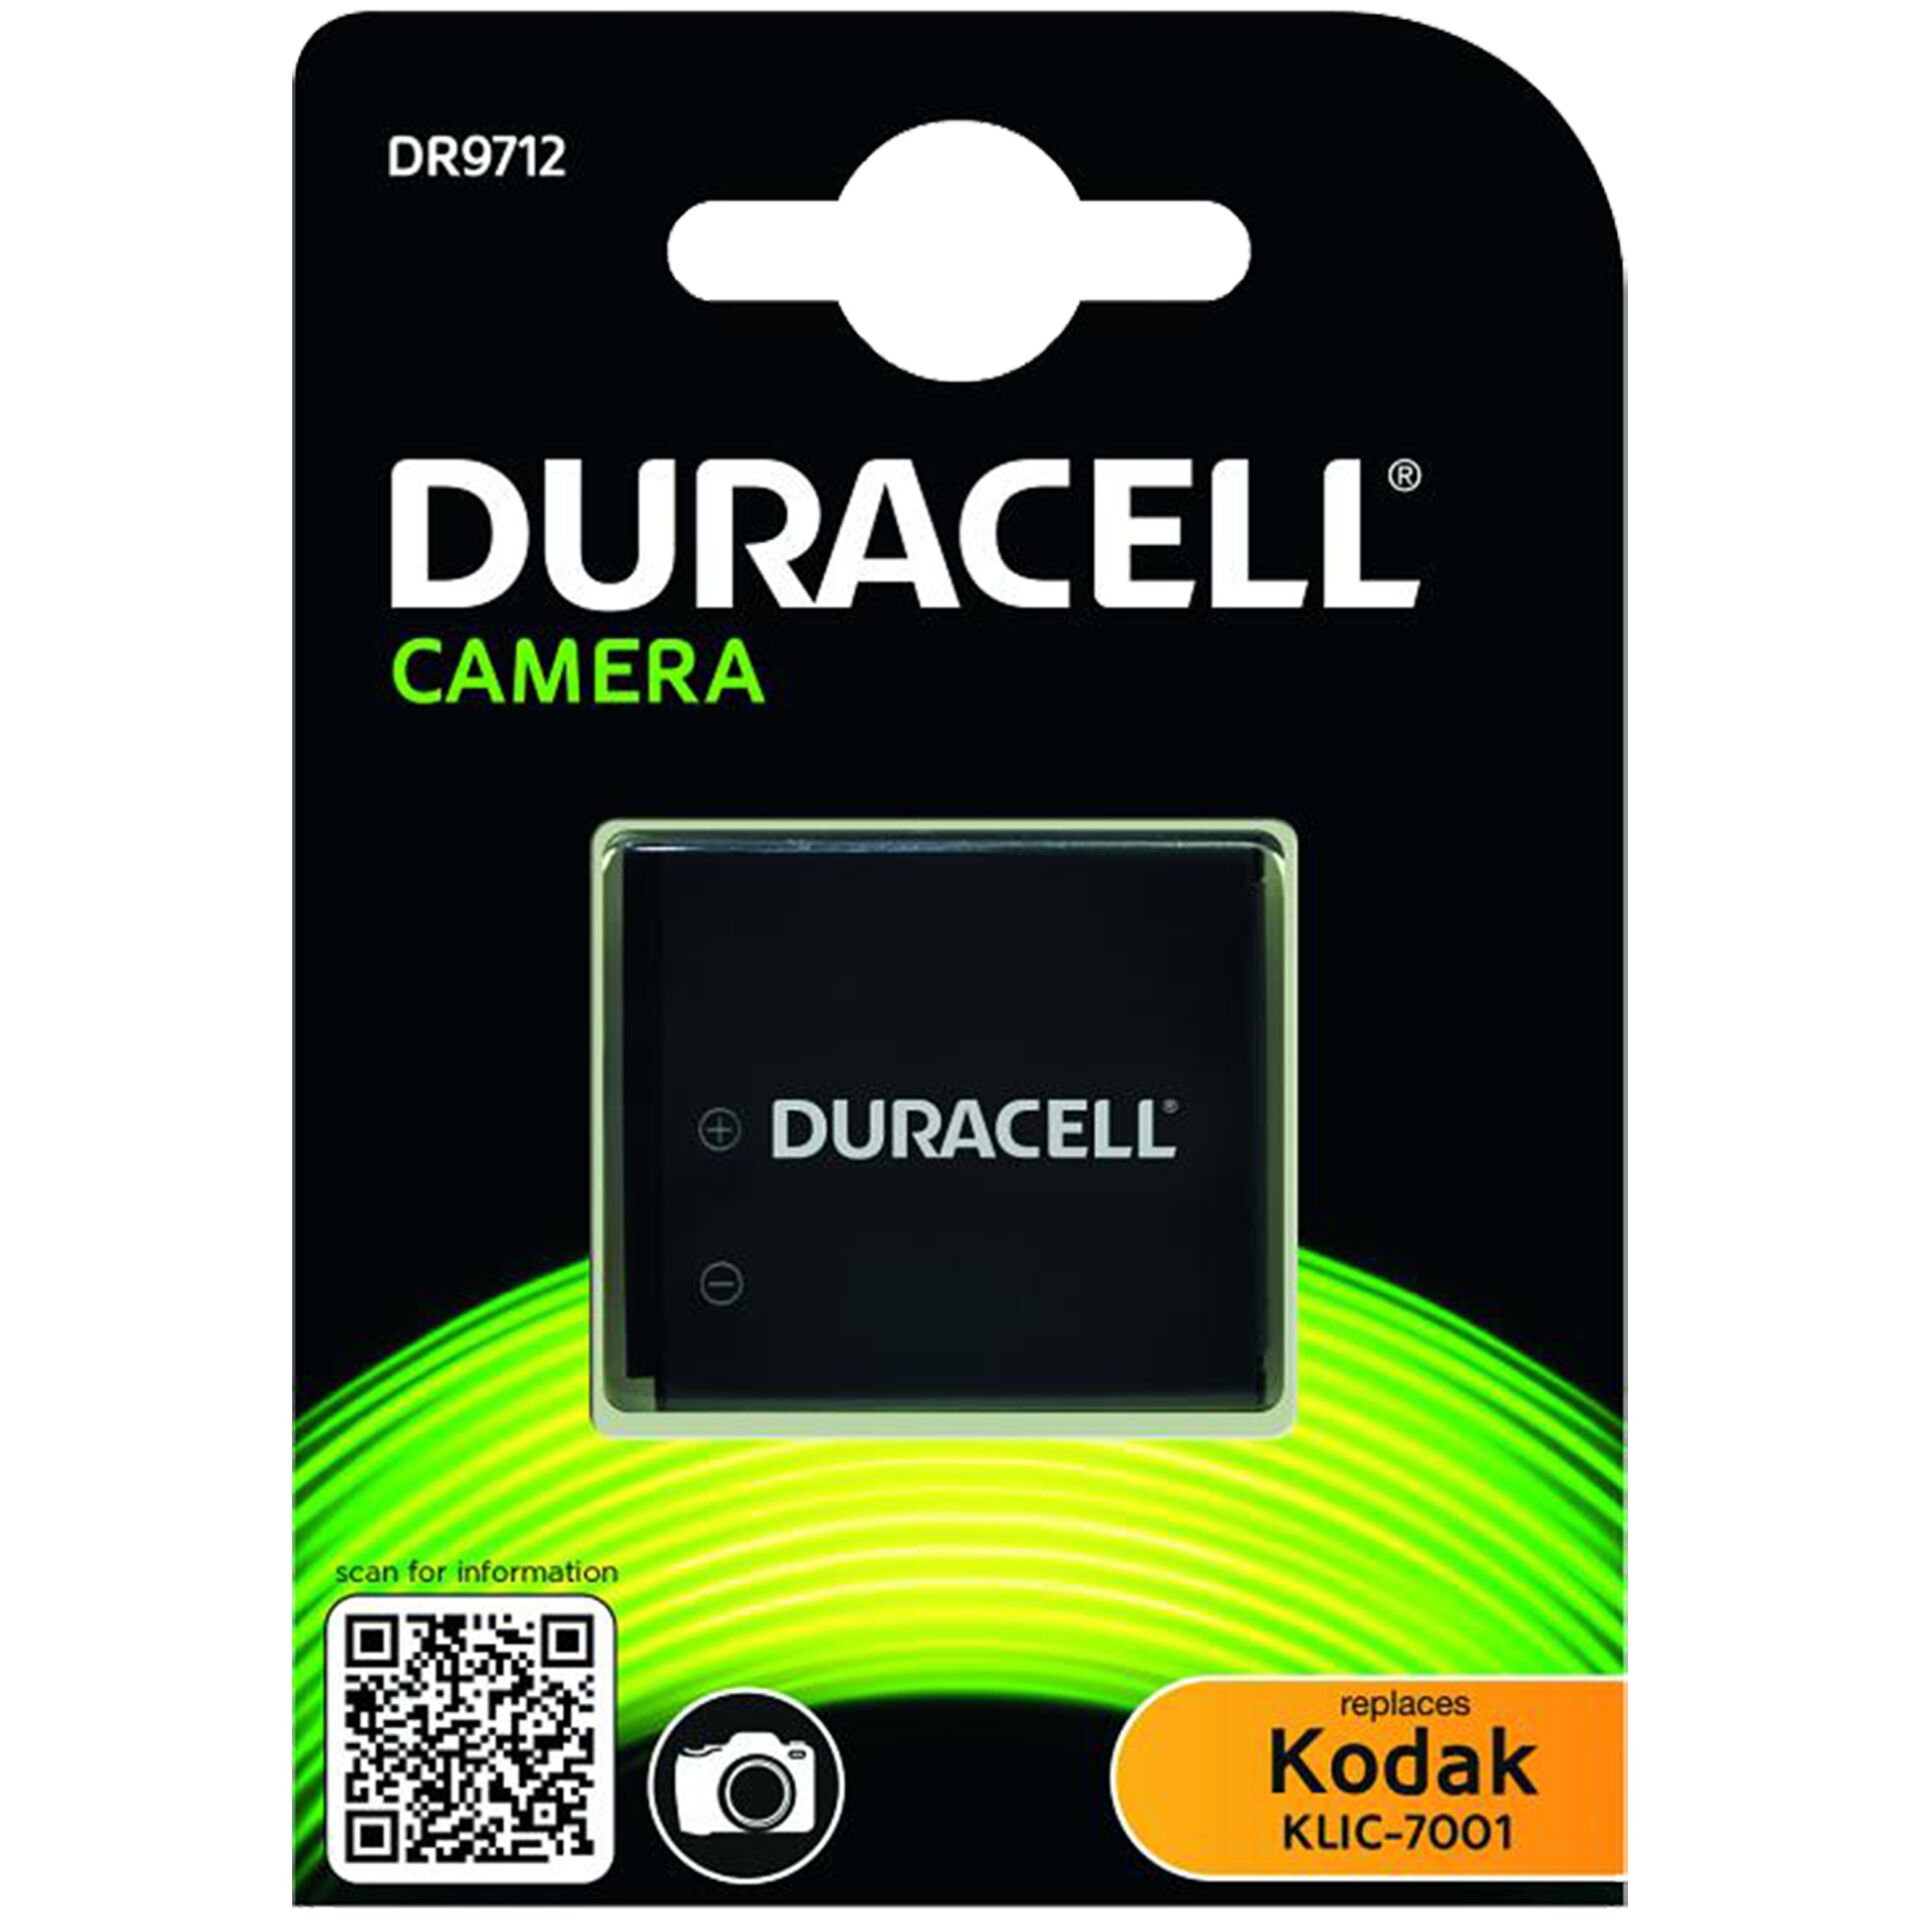 Duracell batt. ioni di litio 700mAh per Kodak KLIC-7001